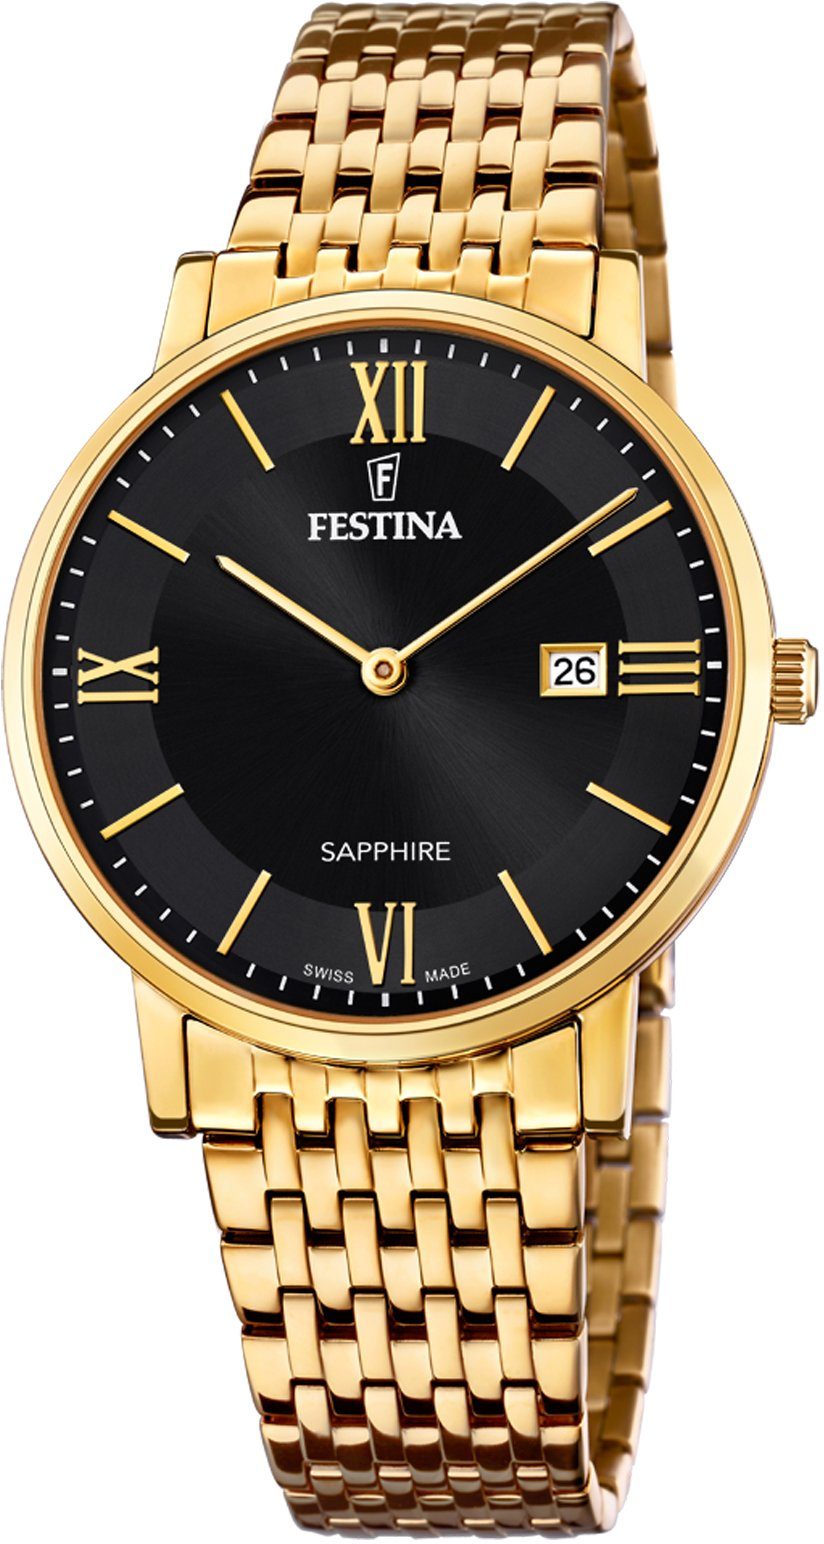 Festina Schweizer Uhr »Festina Swiss Made, F20020/3« online kaufen | OTTO